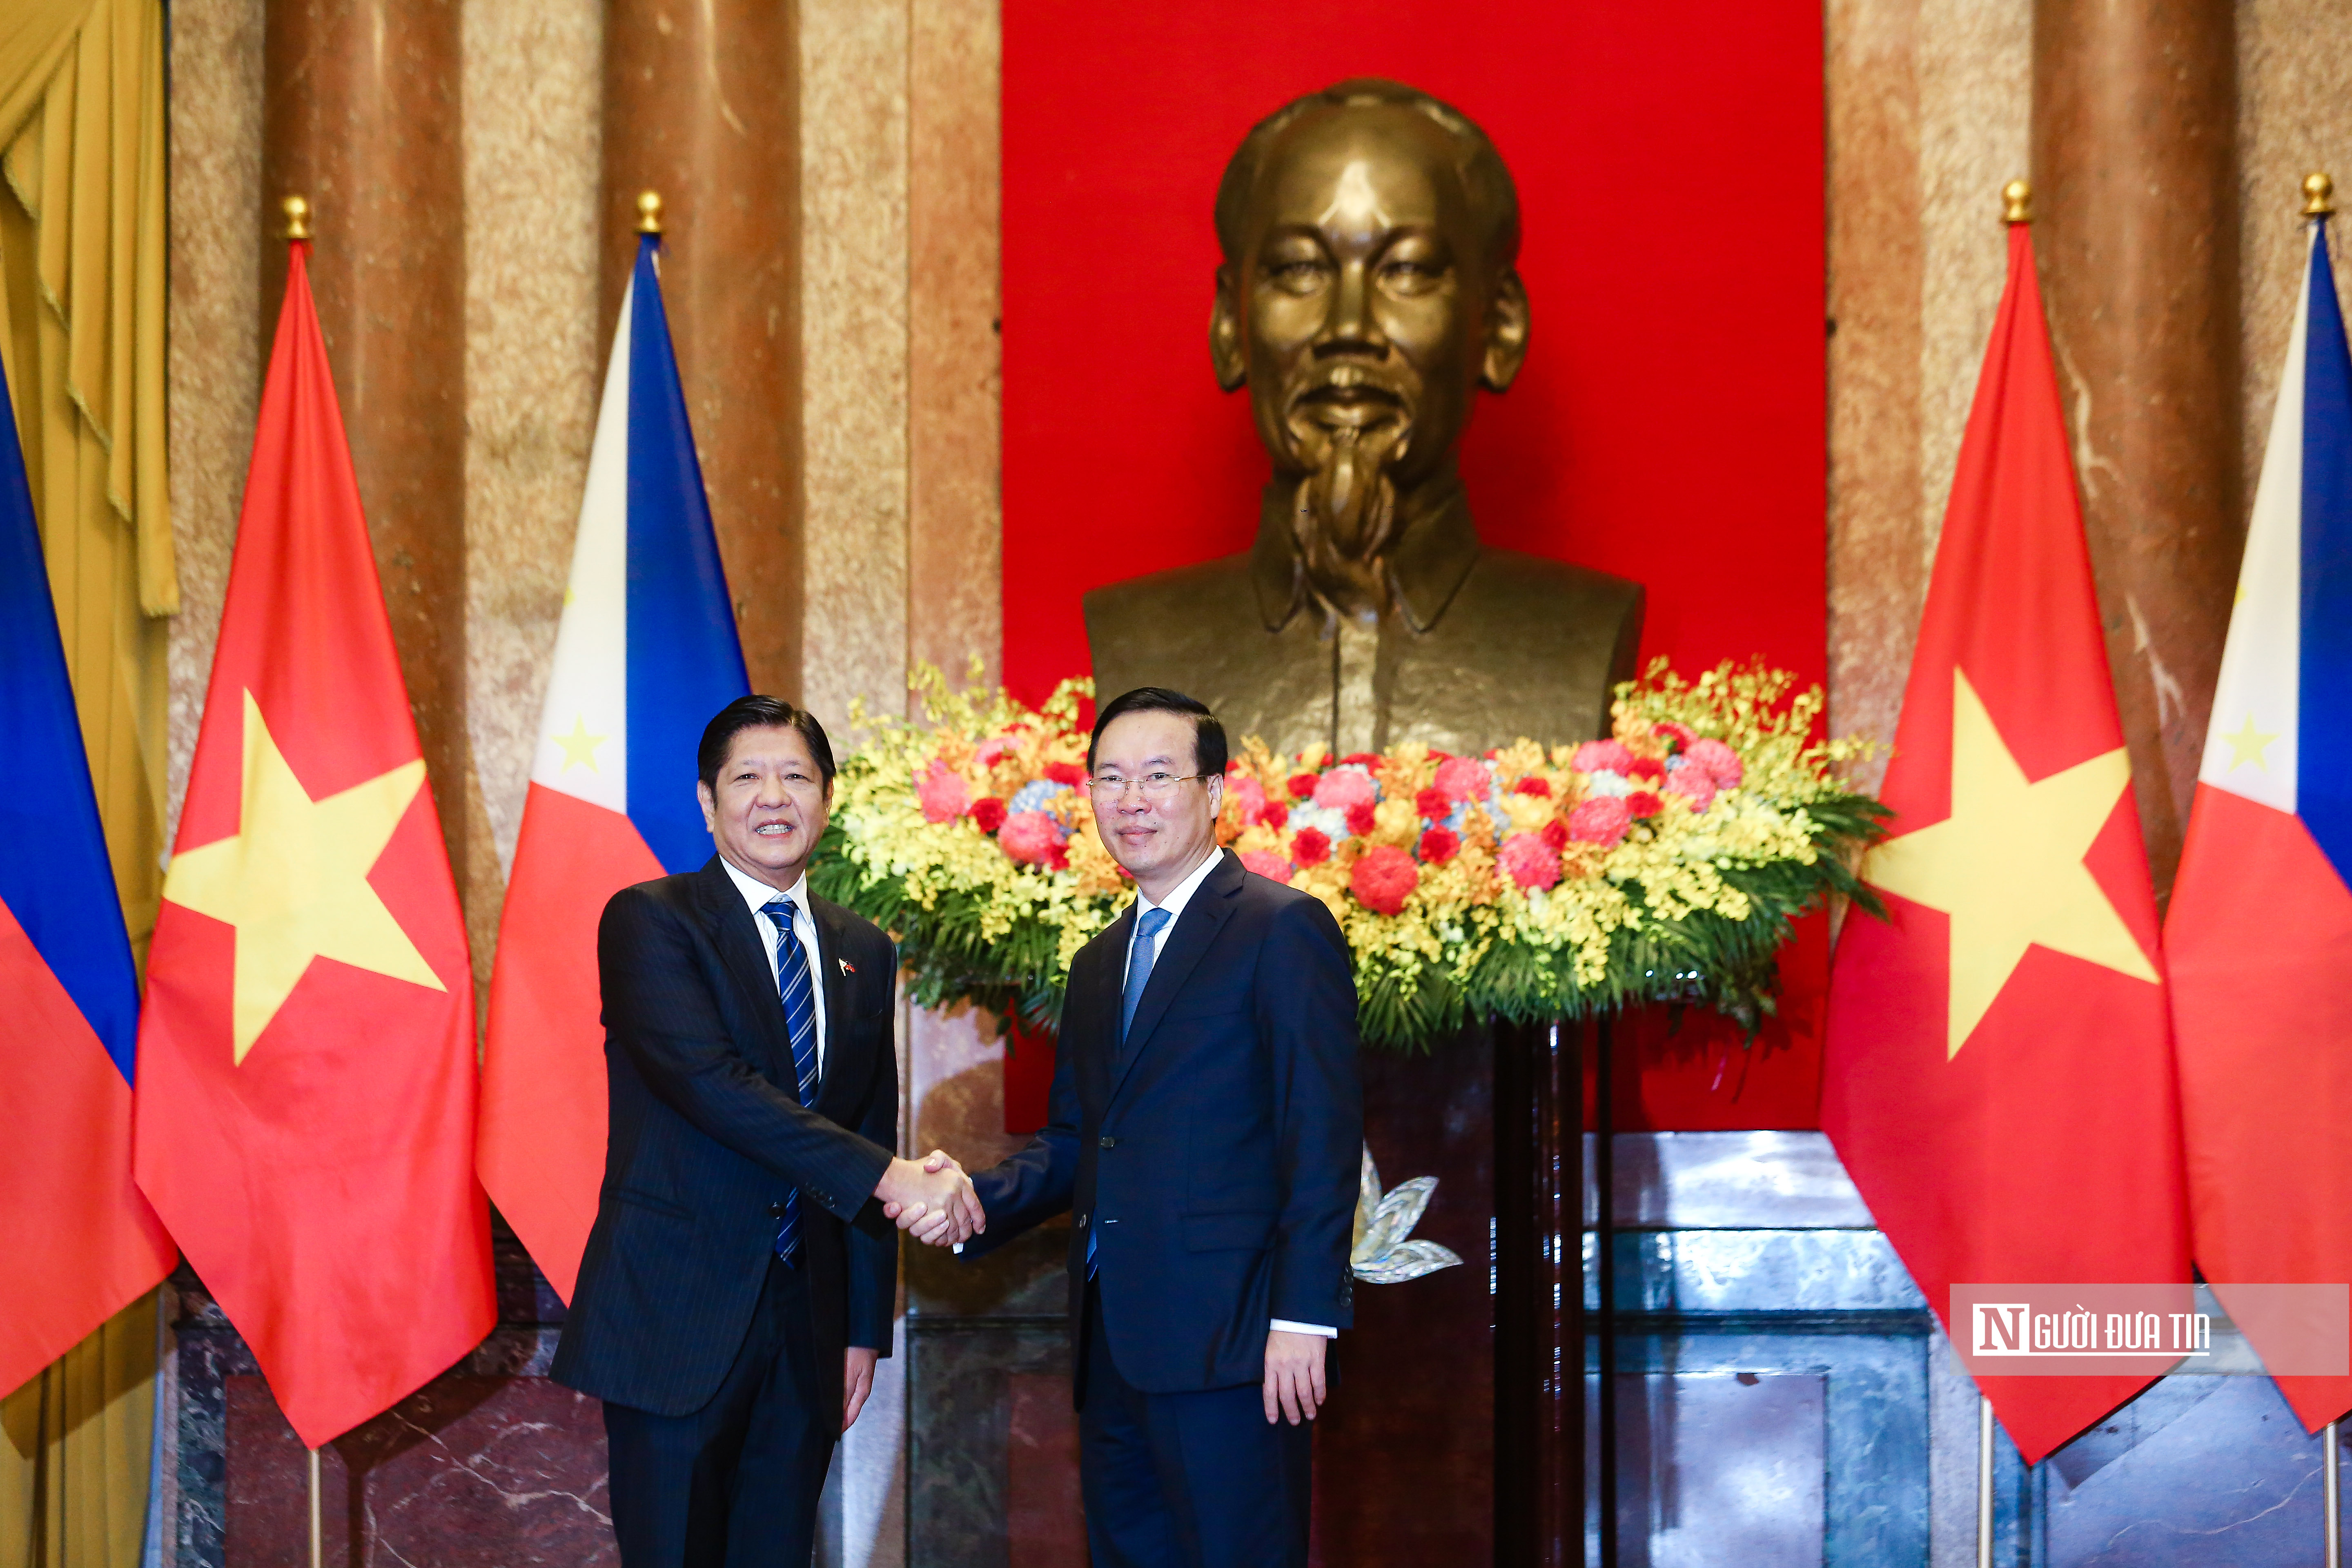 Tiêu điểm - Bắn 21 phát đại bác chào mừng Tổng thống Philippines thăm Việt Nam (Hình 10).